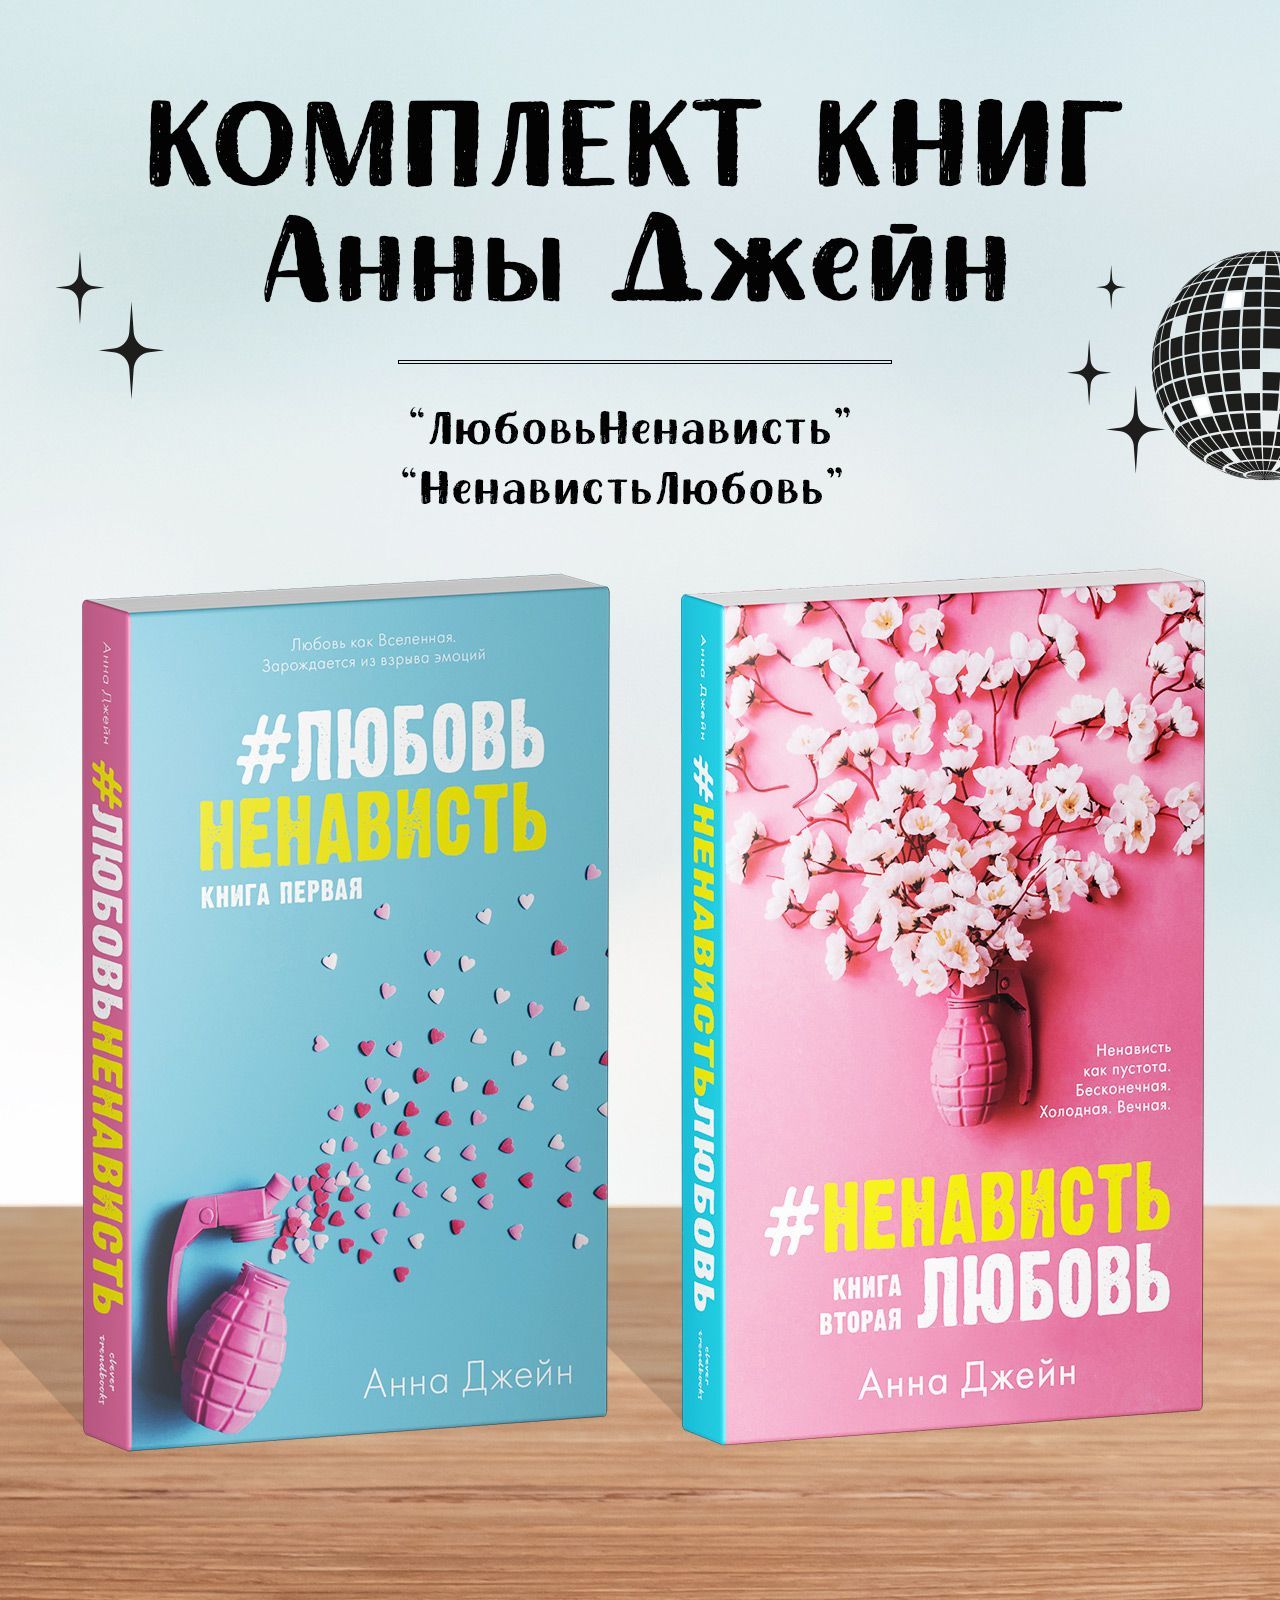 Джейн Анна Комплект книг Анны Джейн ЛюбовьНенависть, НенавистьЛюбовь